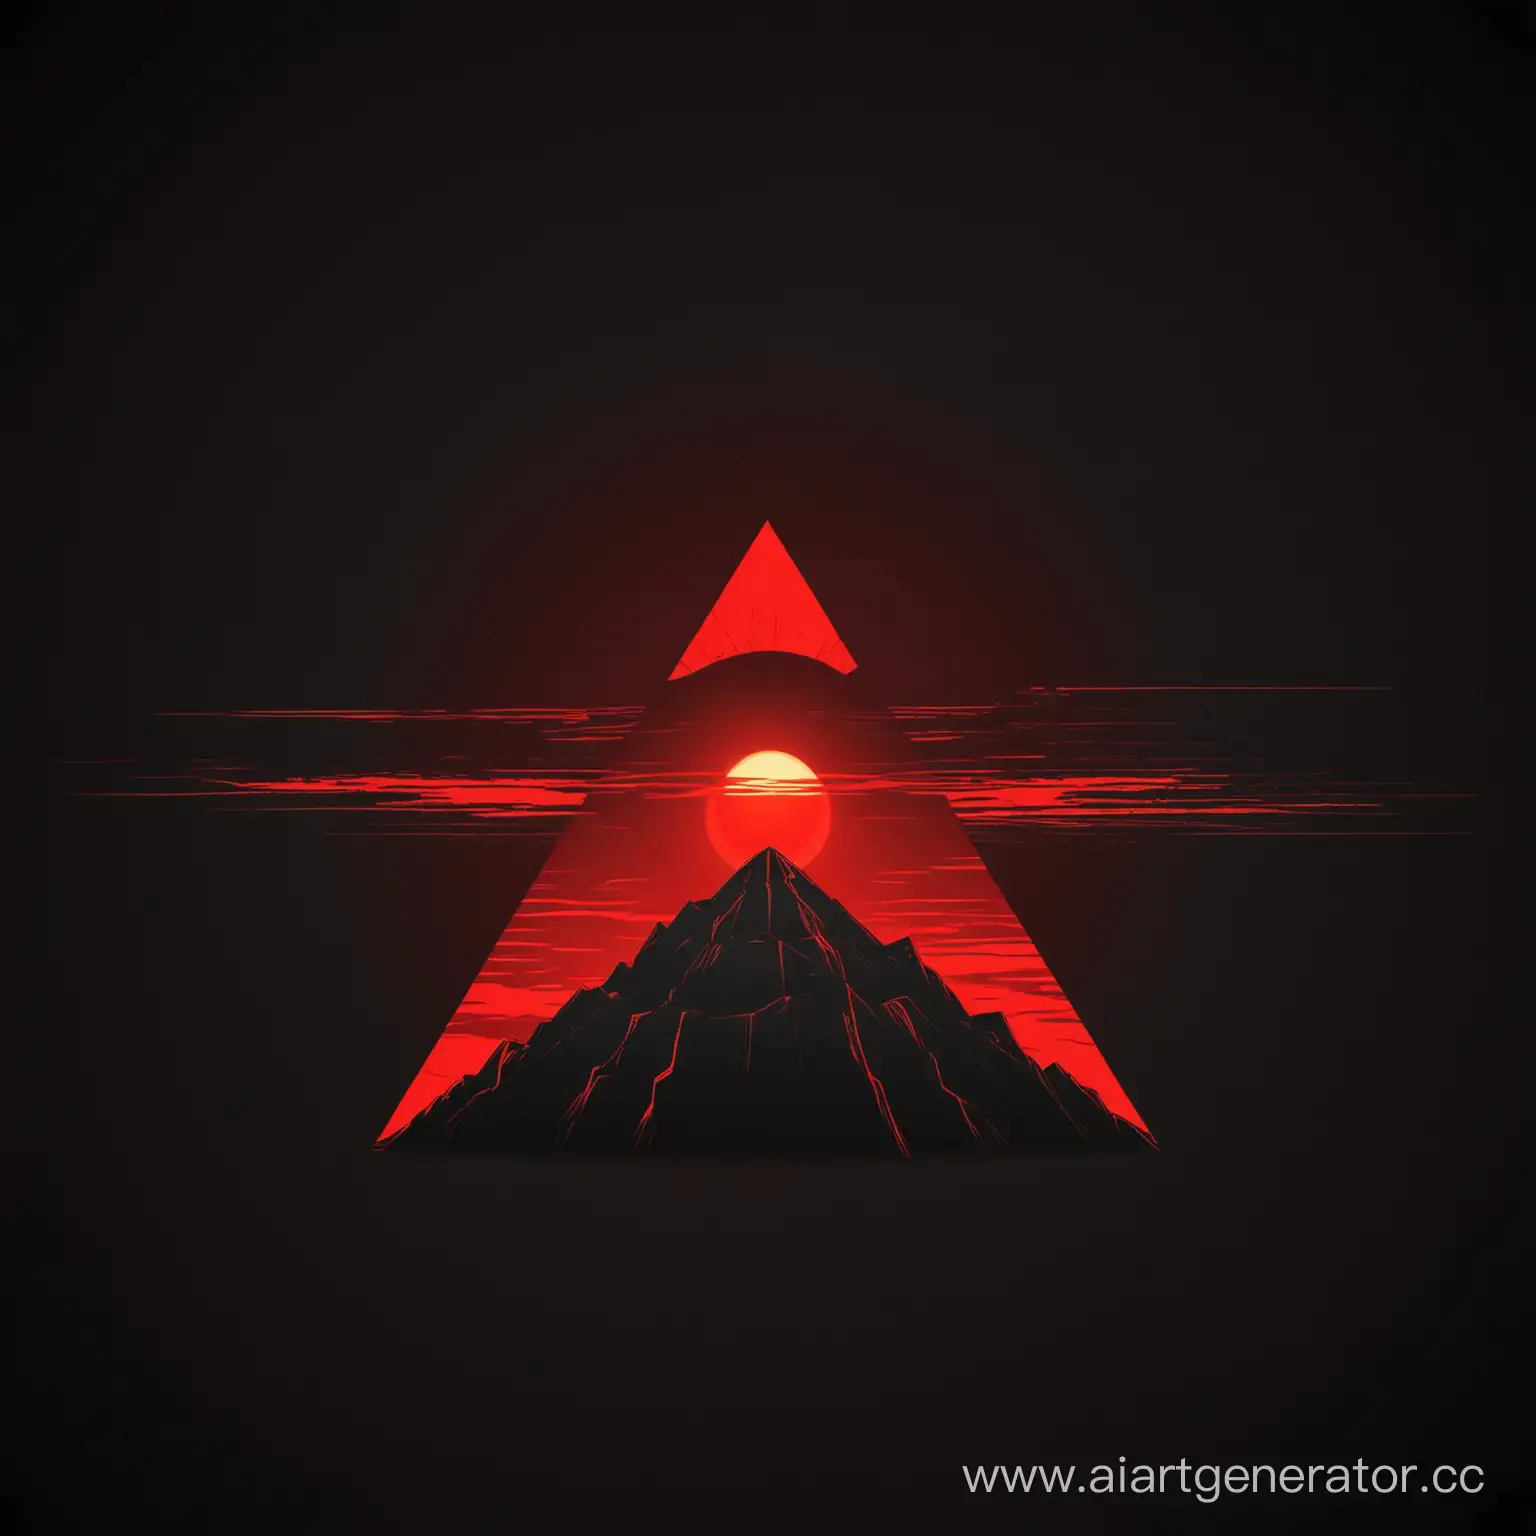 Черная пирамида, позади солнце красное с прямыми красными лучами, Черный фон, логотип, мультяшный стиль 